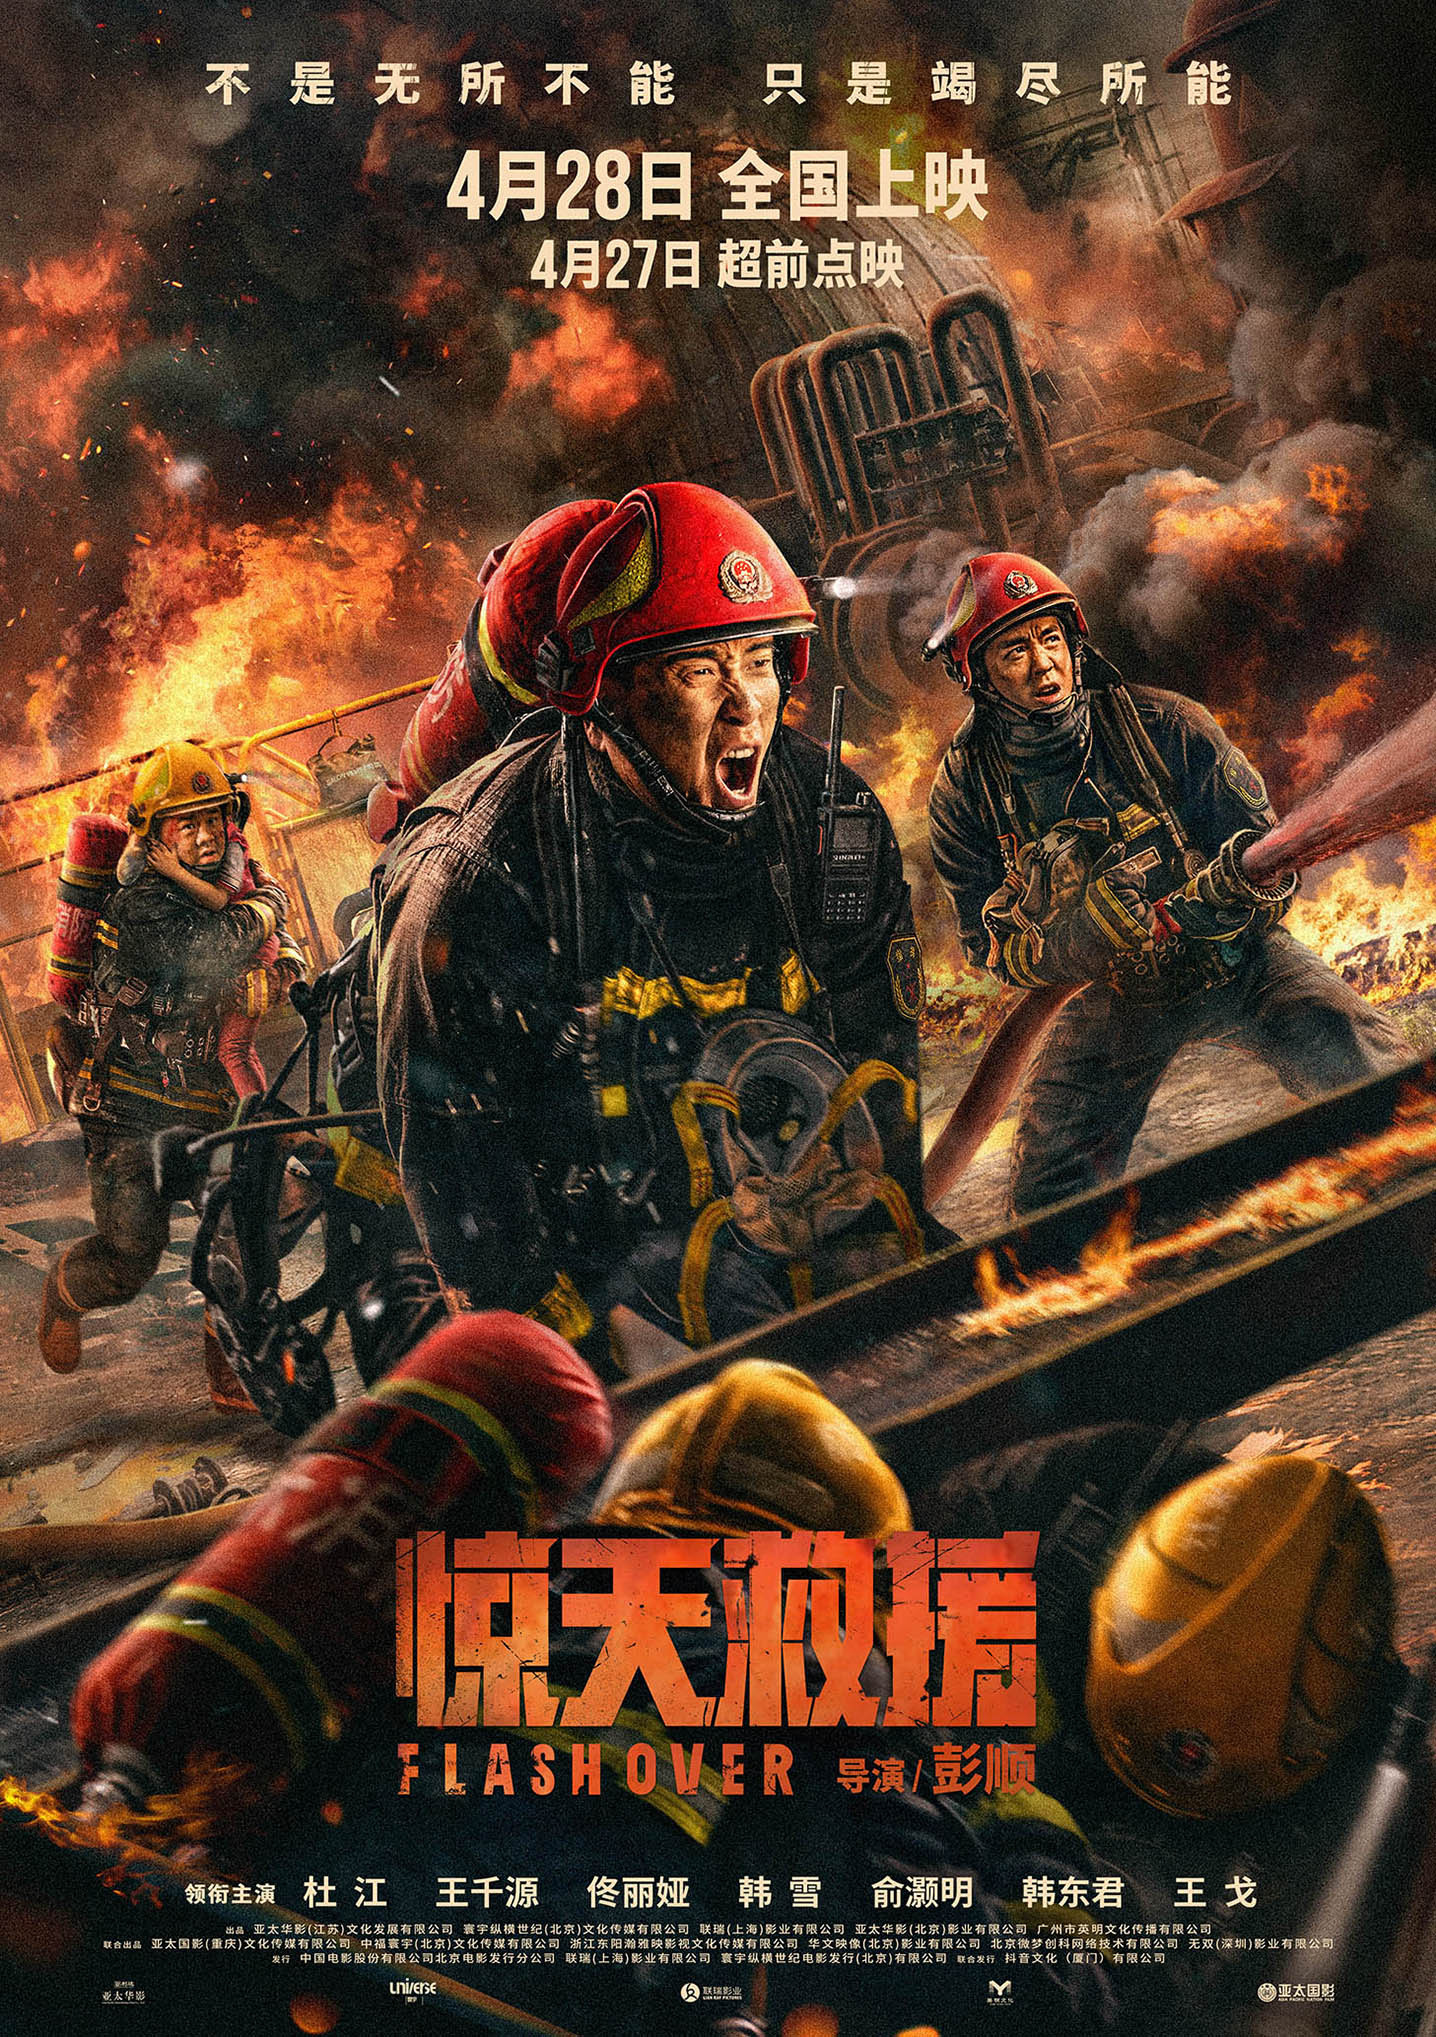 电影《惊天救援》发布关系海报 展现消防员兄弟情